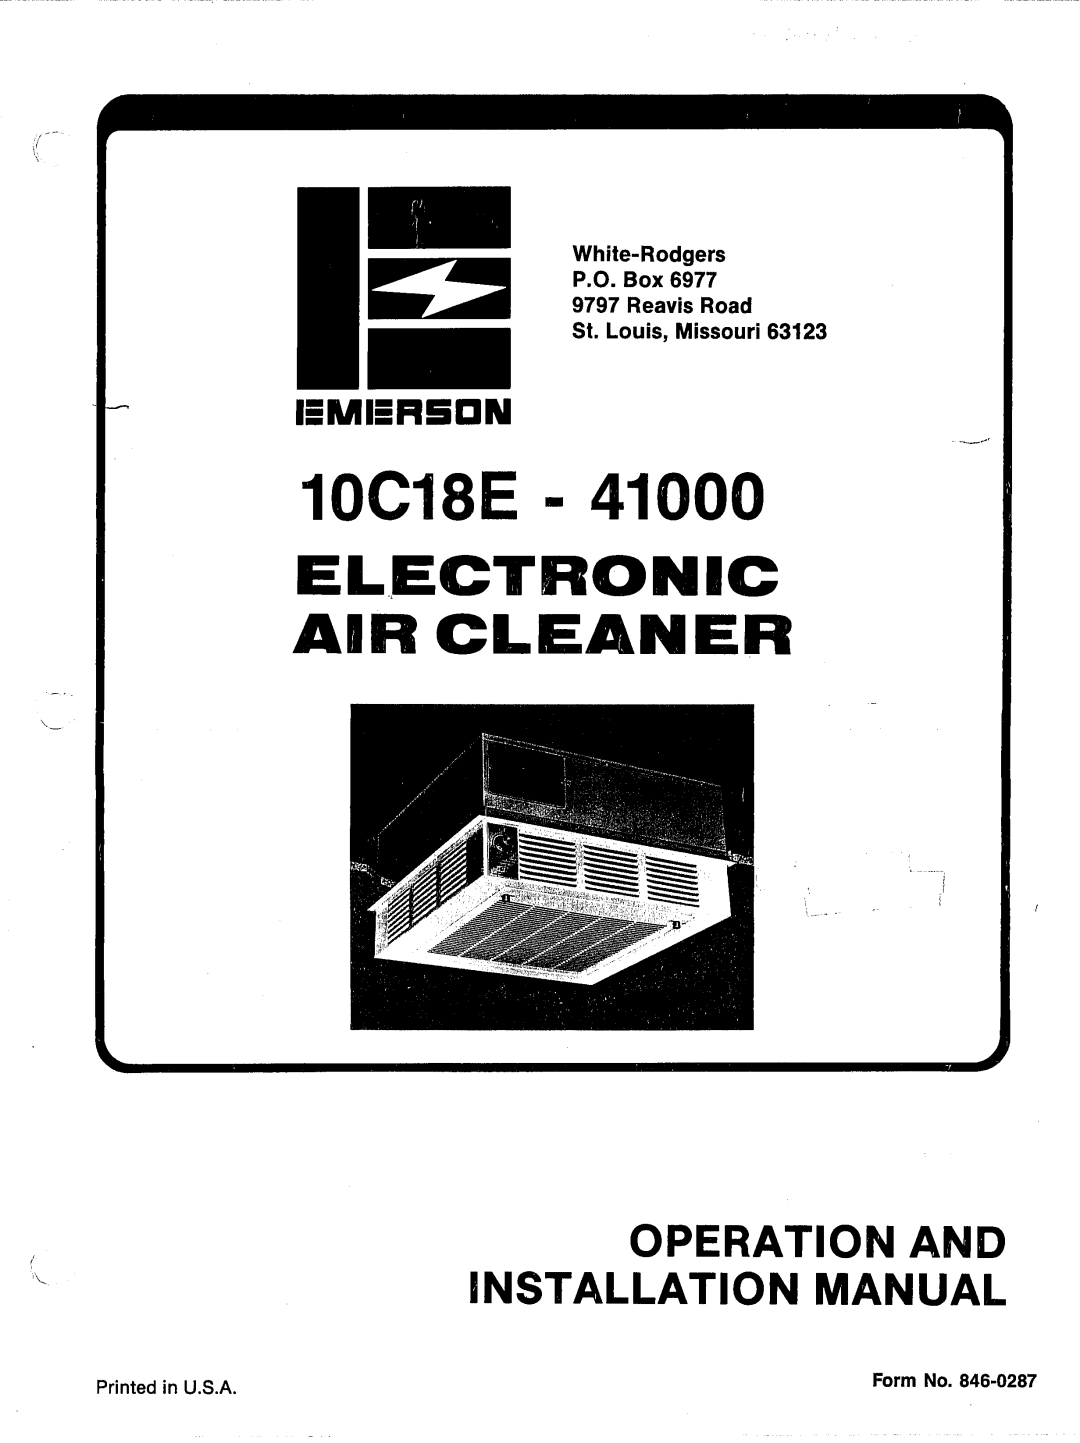 Emerson 10C18E - 41000, 10C18E-41000 manual 